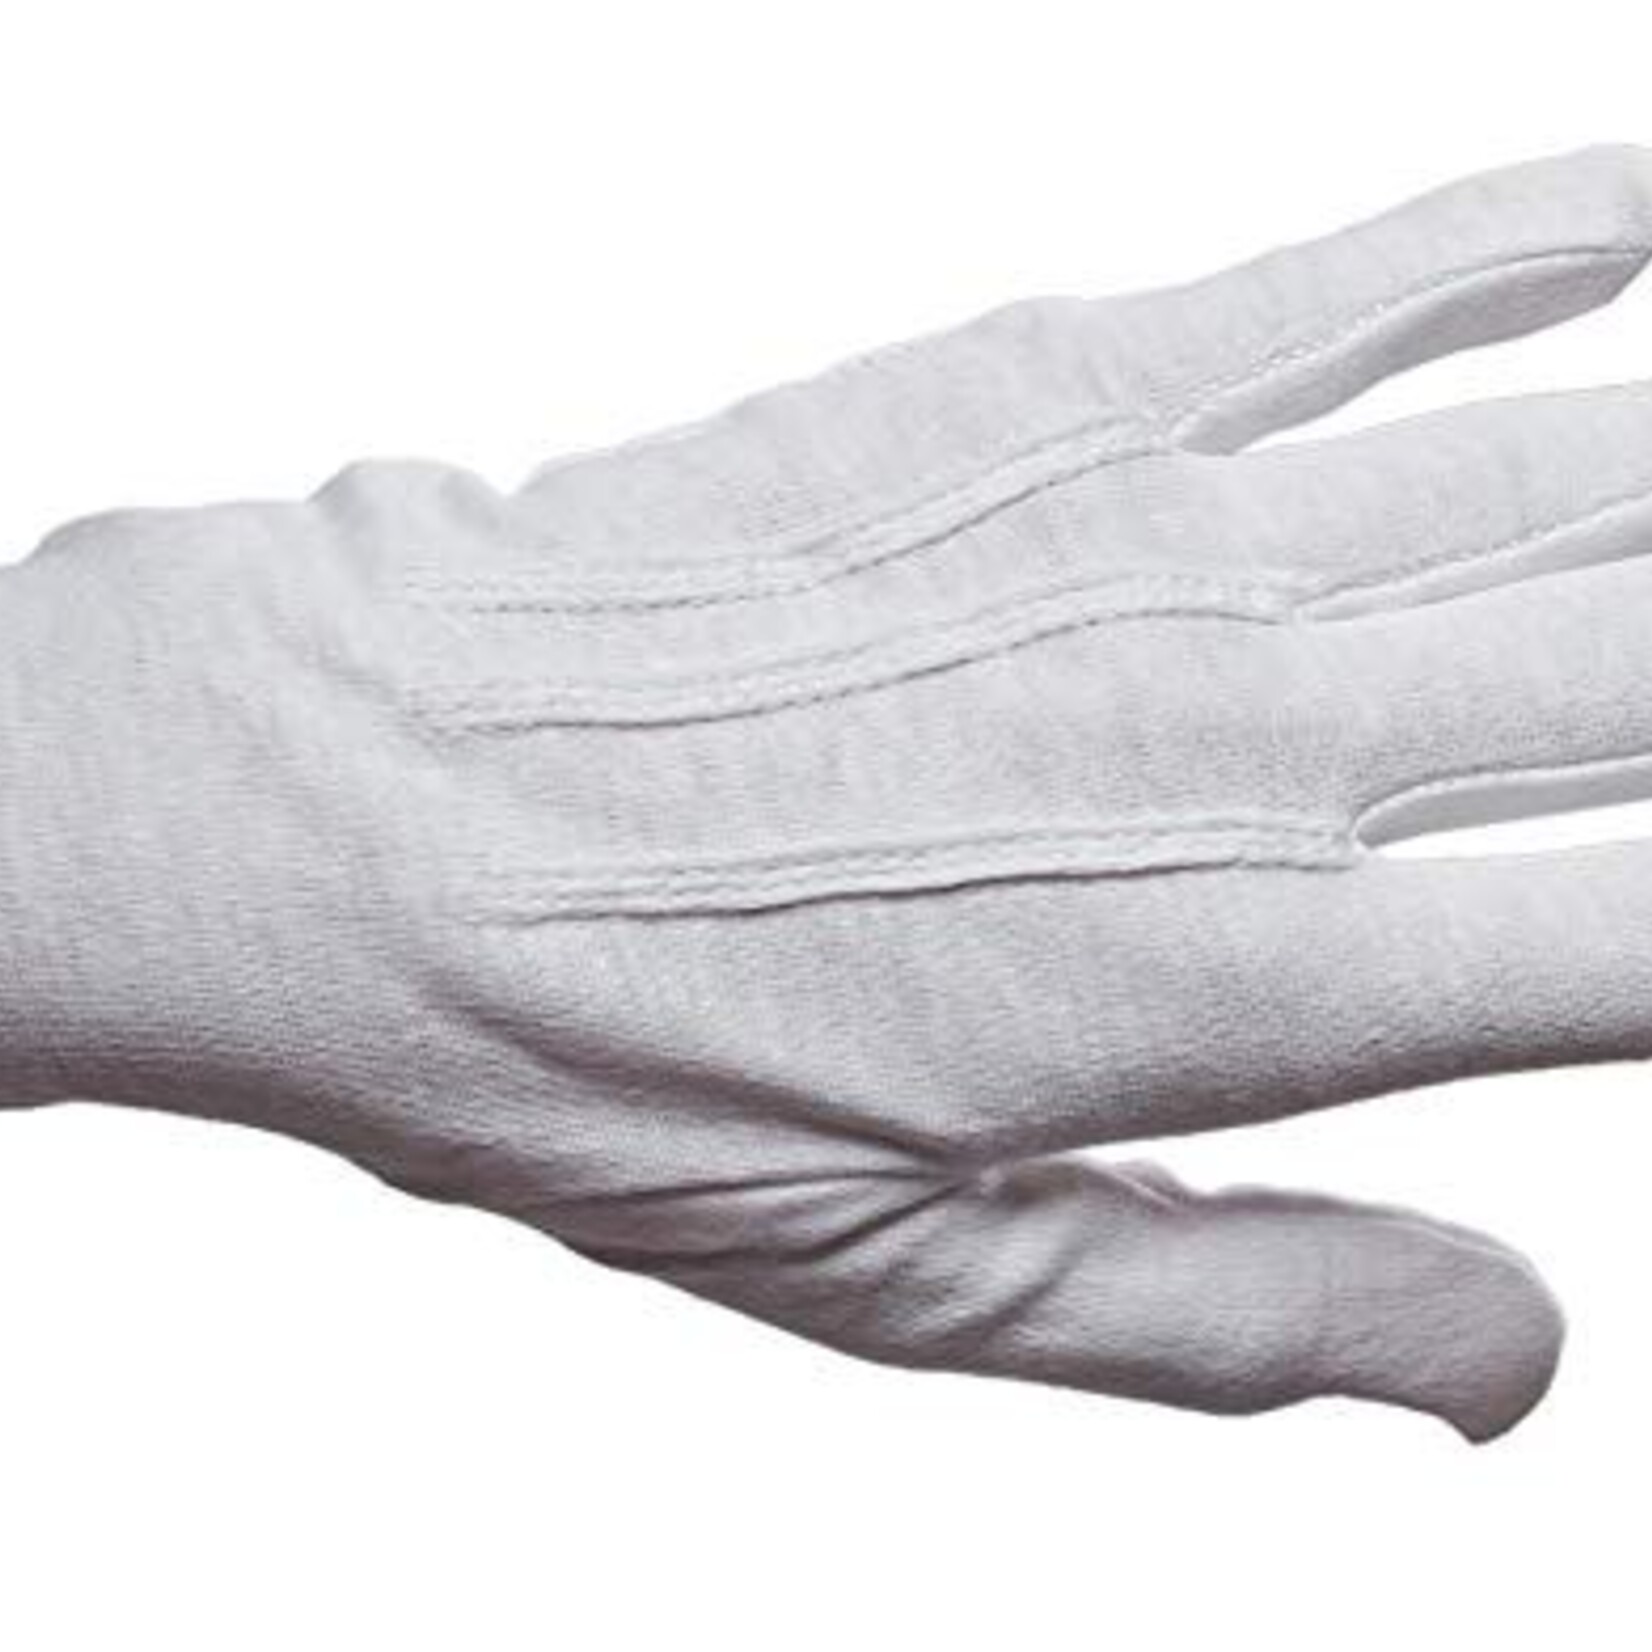 A-4 Parade White Cotton Gloves